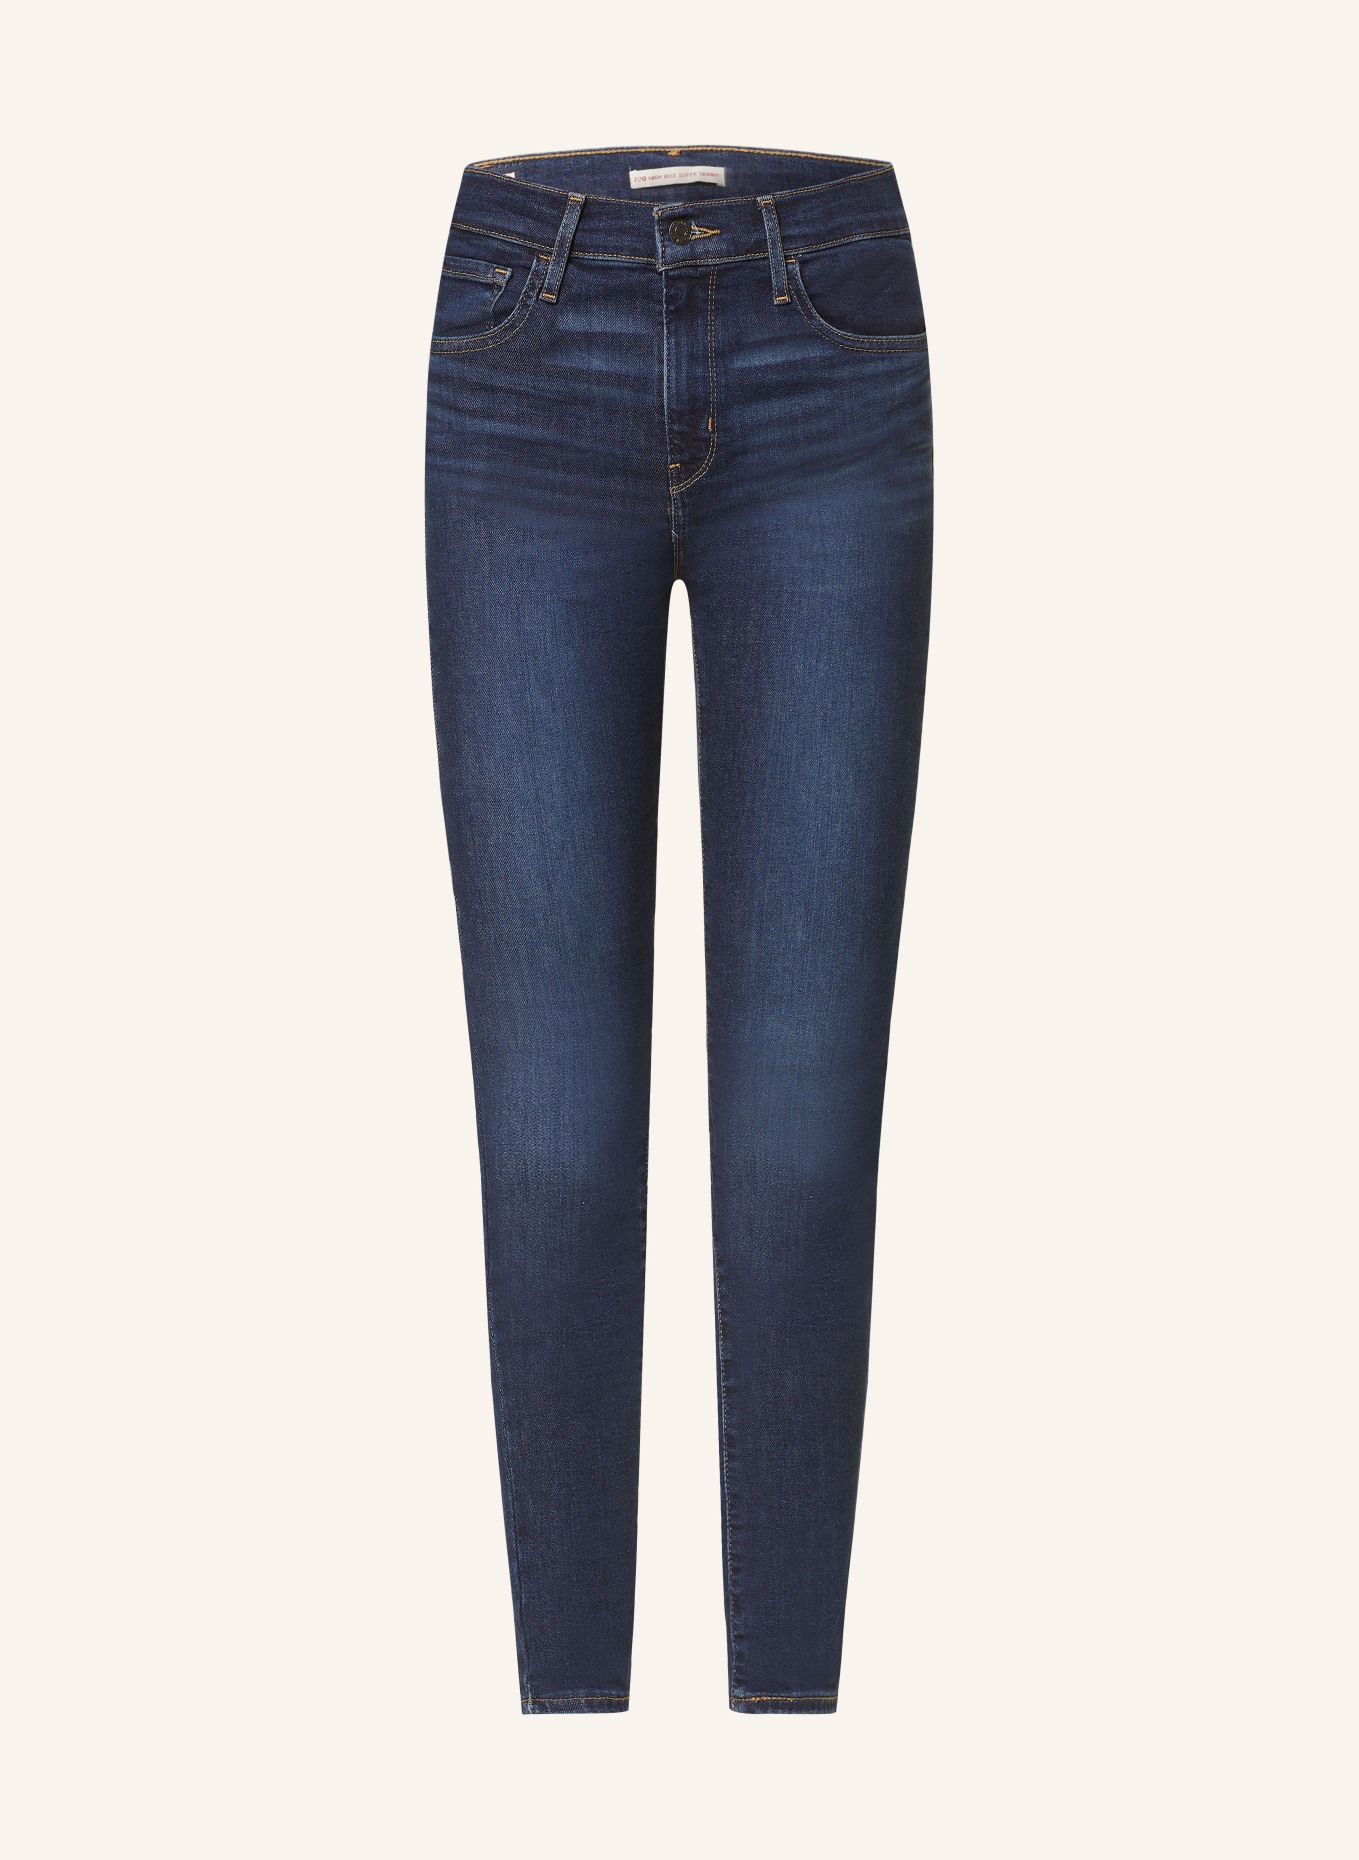 Levi's® Skinny jeans 720, Color: 51 Dark Indigo - Worn In (Image 1)